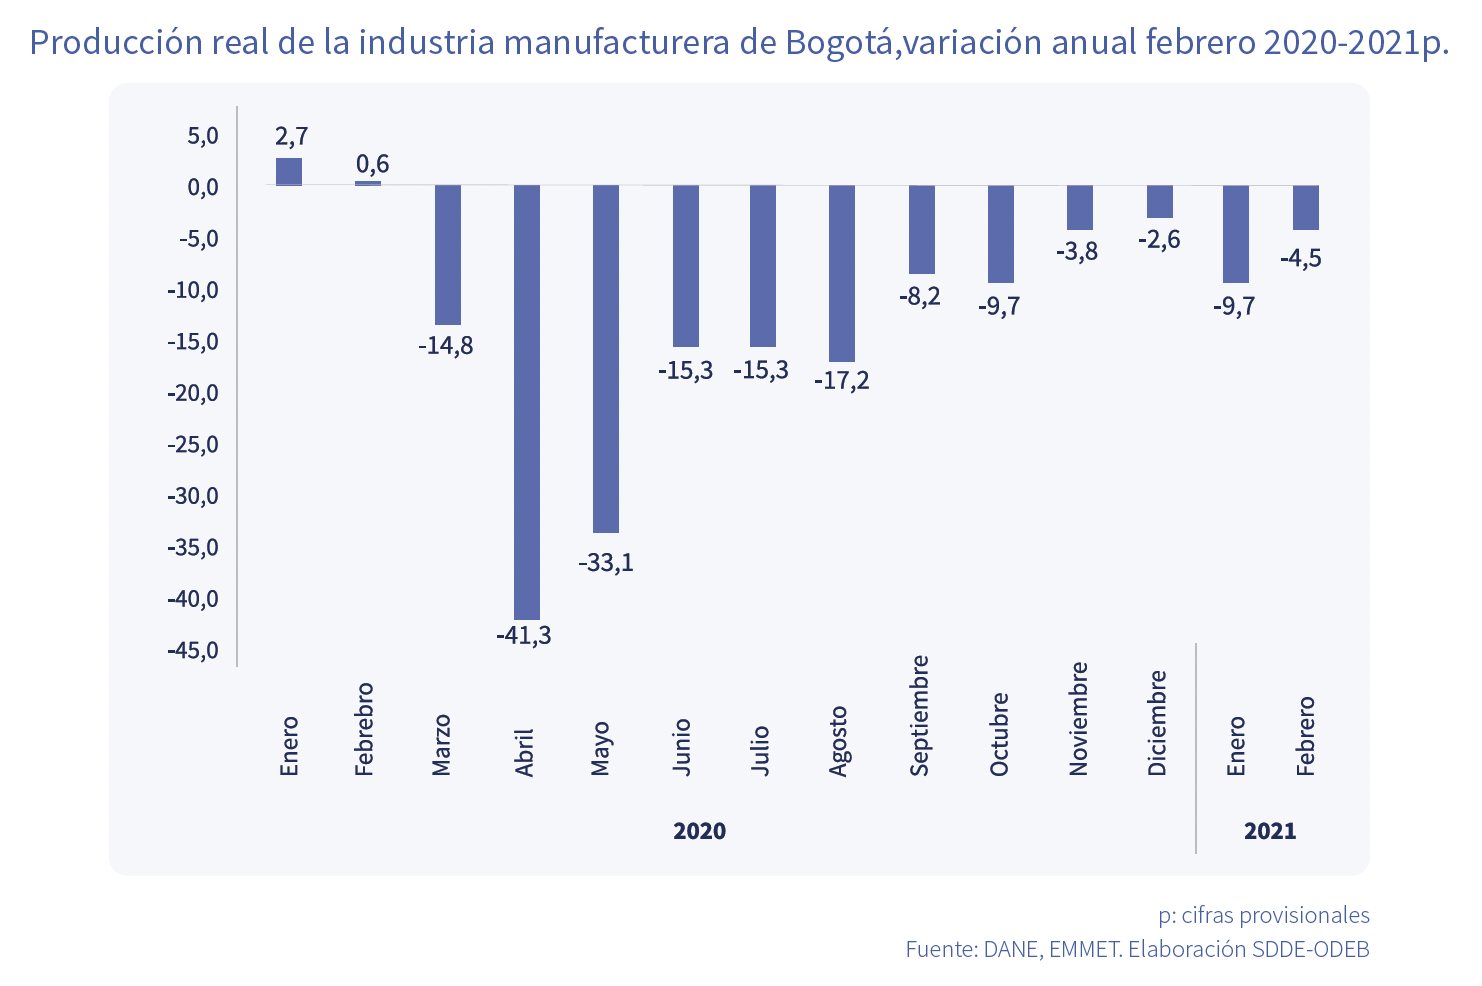 Producción real de la industria manufacturera de Bogotá, febrero 2020-2021